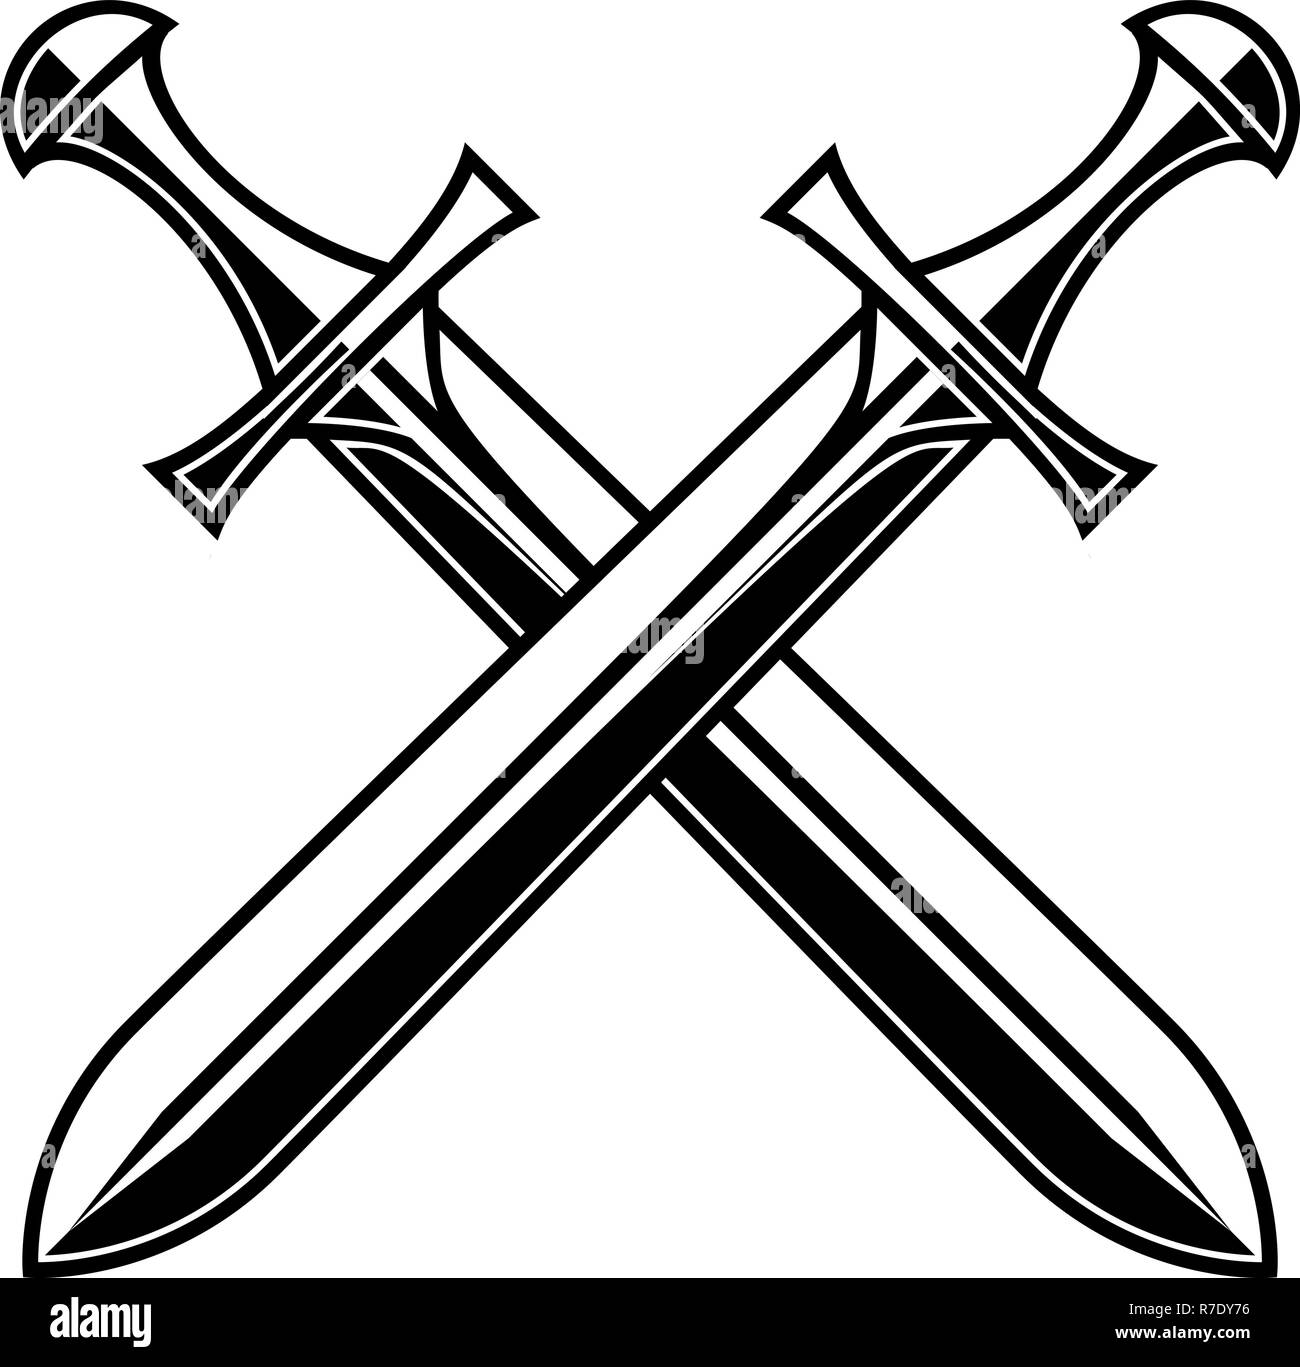 Incrociate le spade medievali su sfondo bianco. Elemento di design per il logo, l'etichetta, emblema, segno, poster, t-shirt. Illustrazione Vettoriale Illustrazione Vettoriale